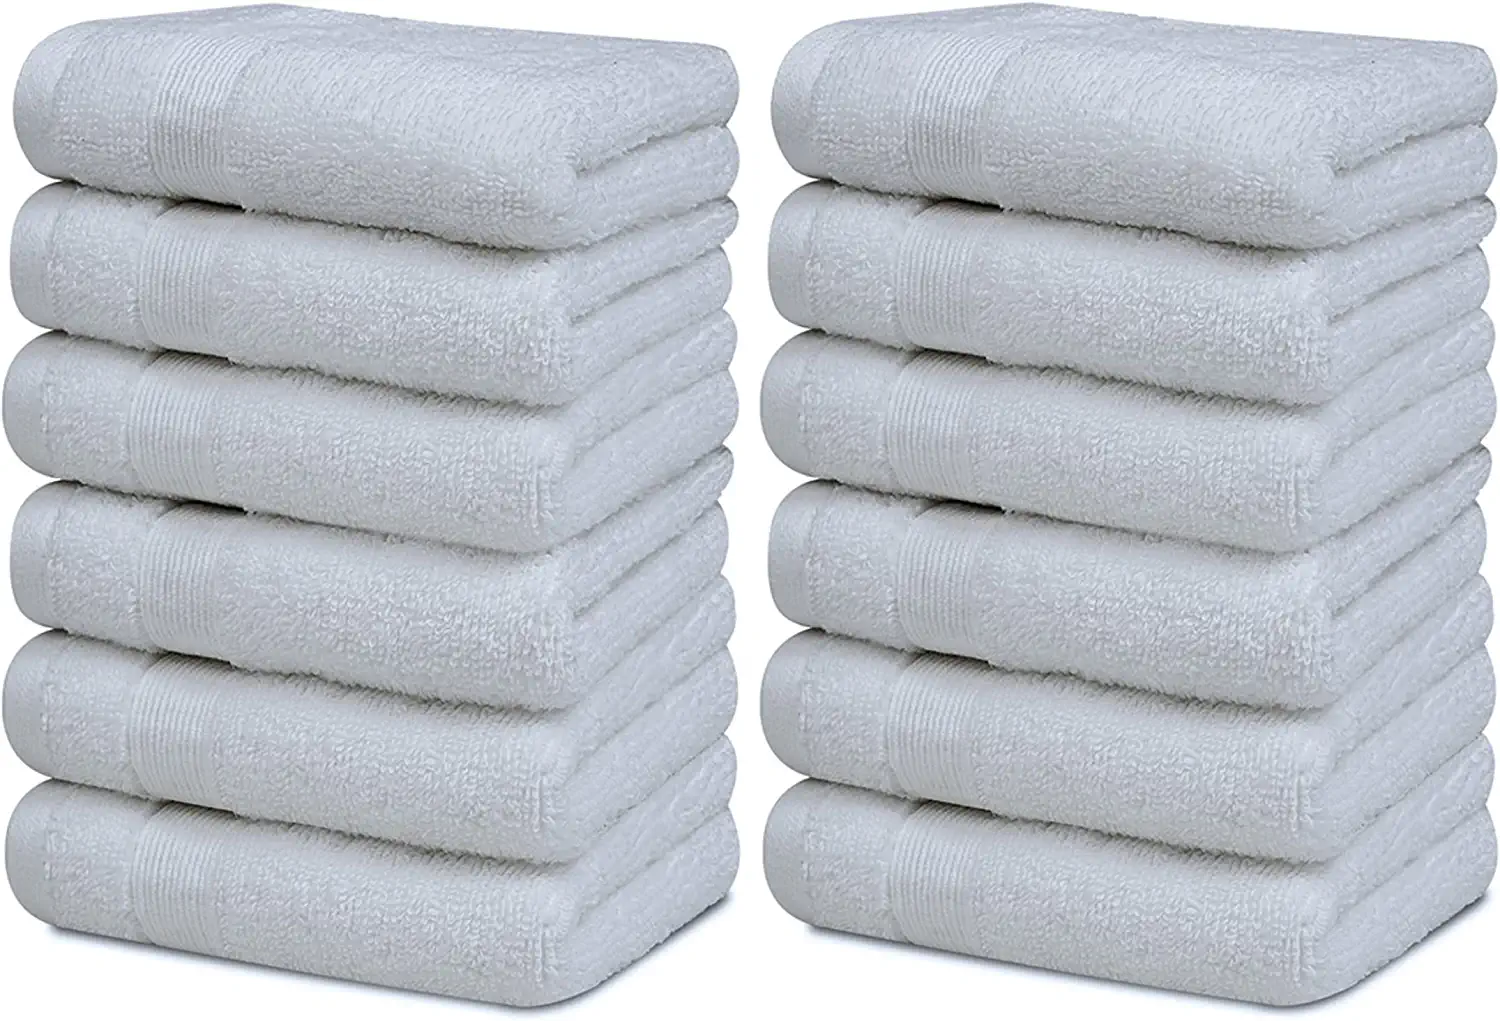 Clorox Washcloth Set 12 Pack Washcloths, 12x12 inch, Mineral Blue, Size: 12 x 12